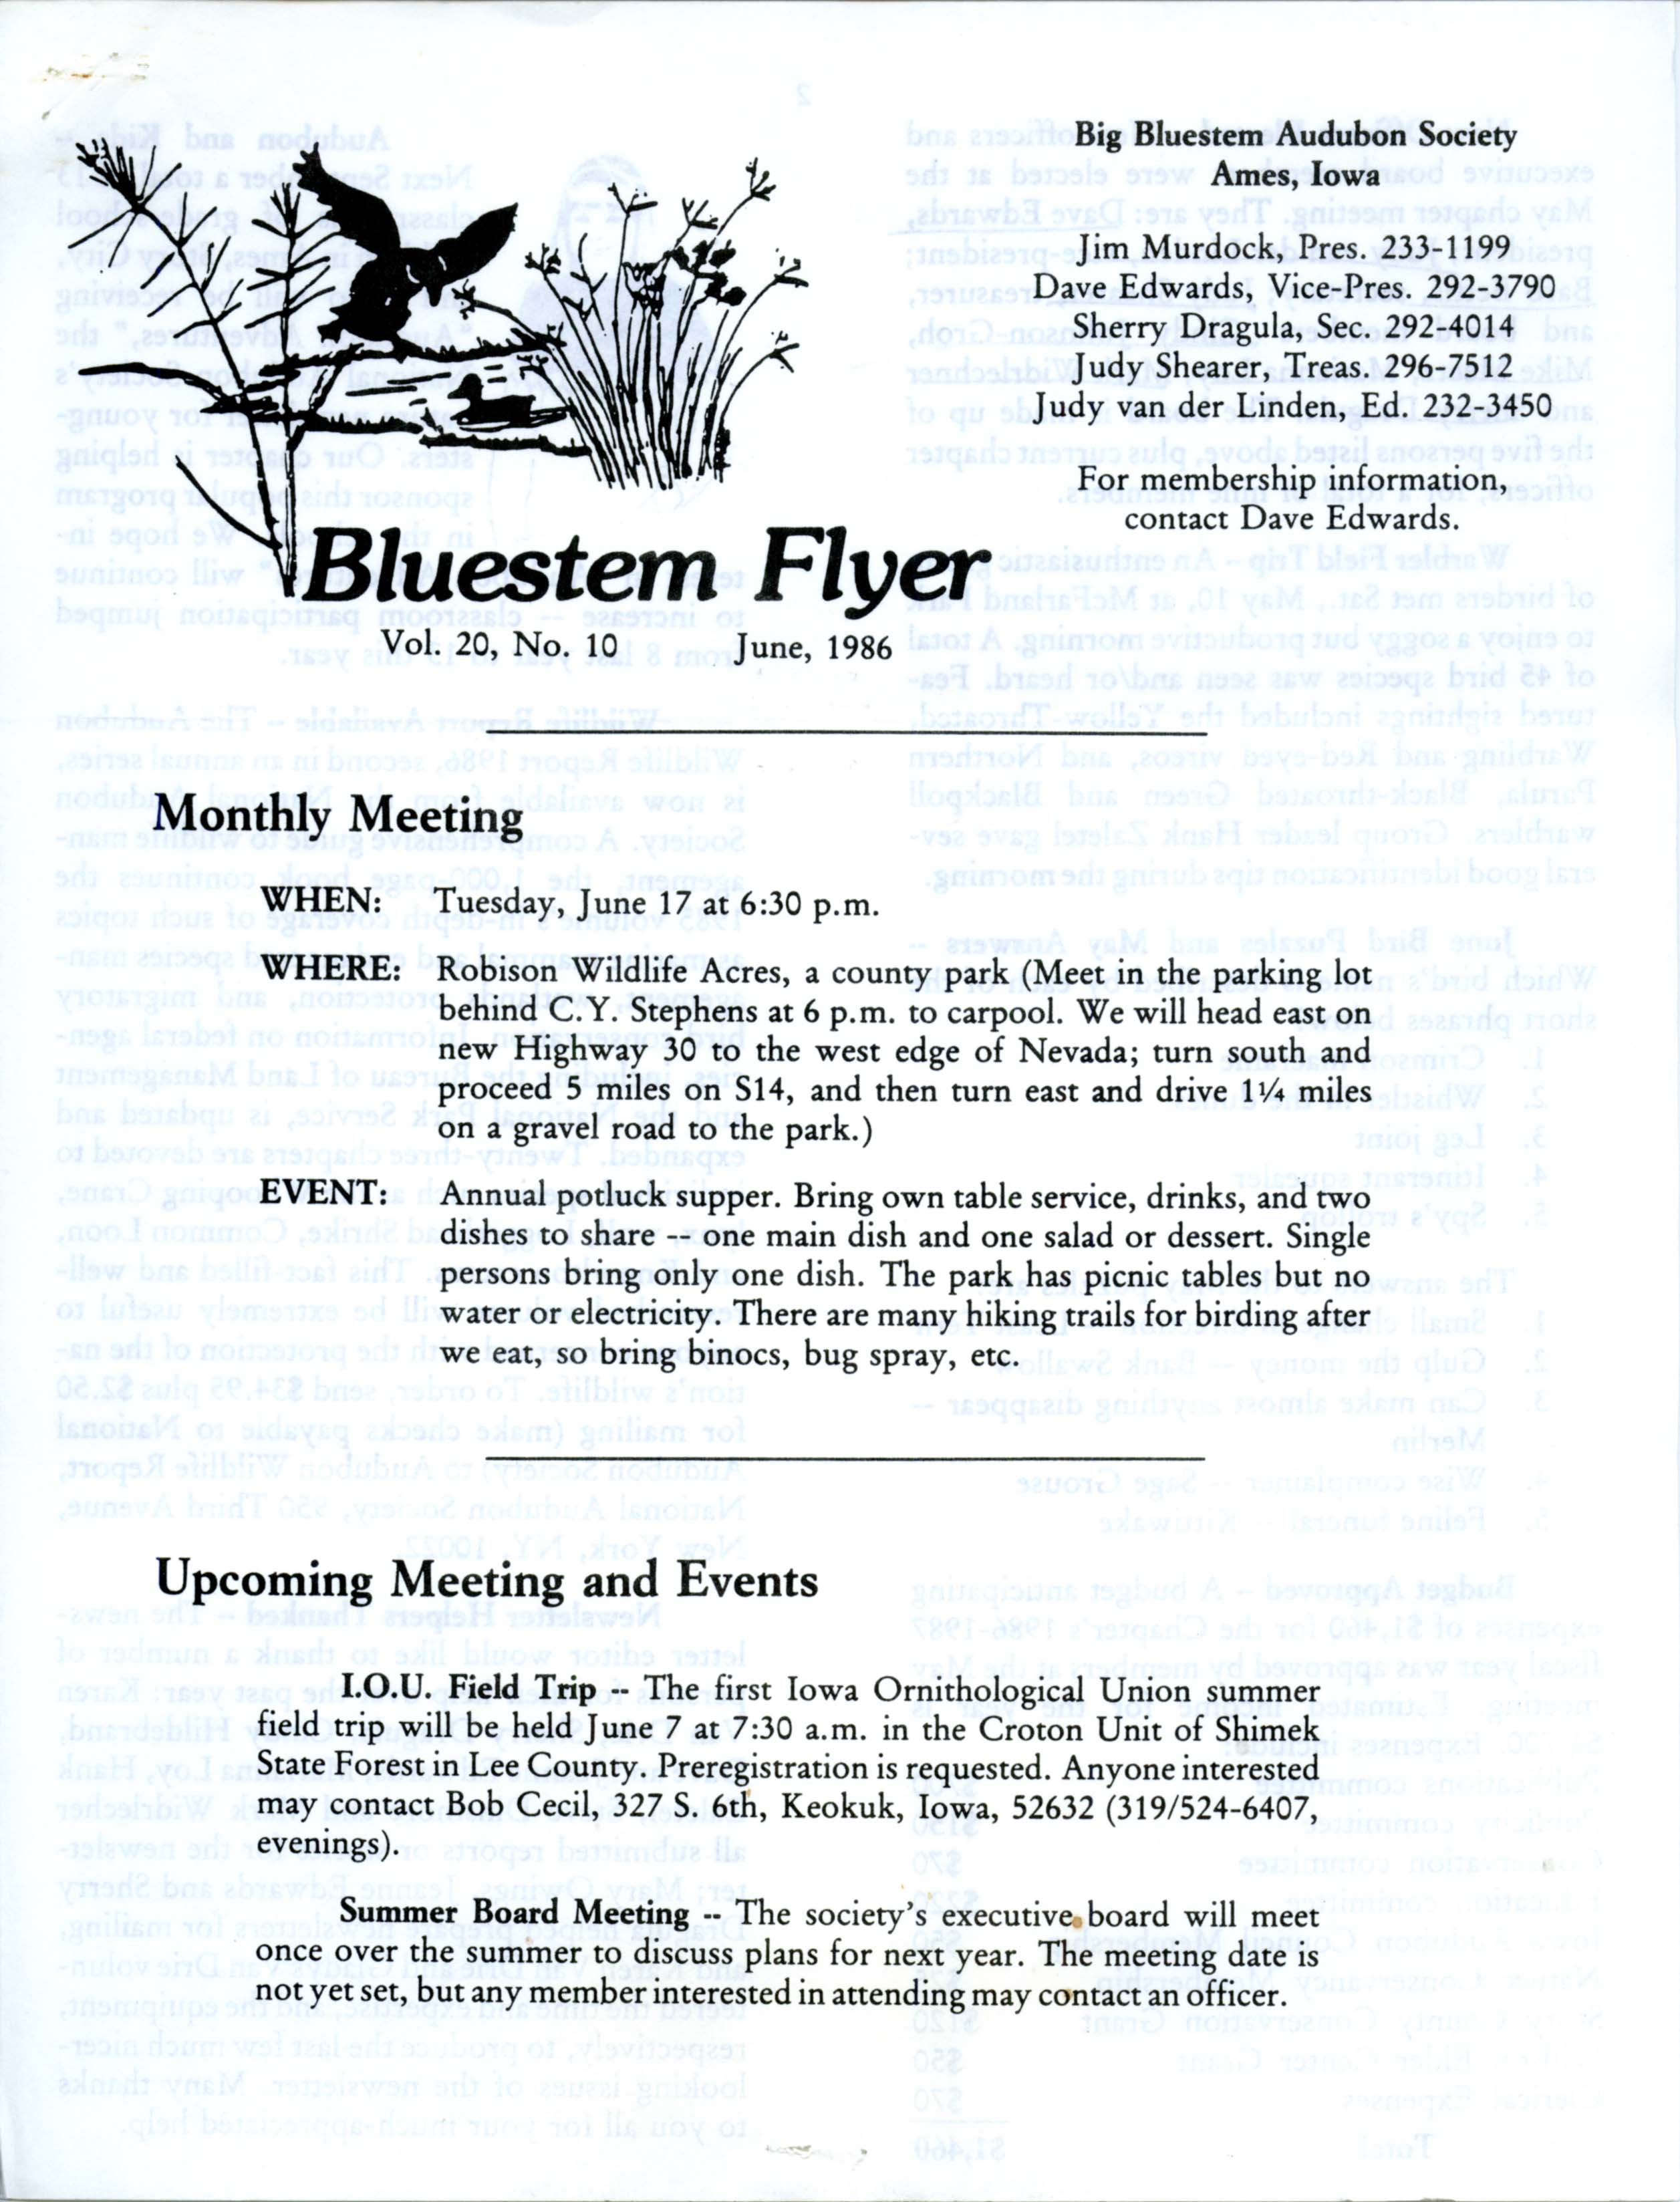 Bluestem Flyer, Volume 20, Number 10, June 1986 